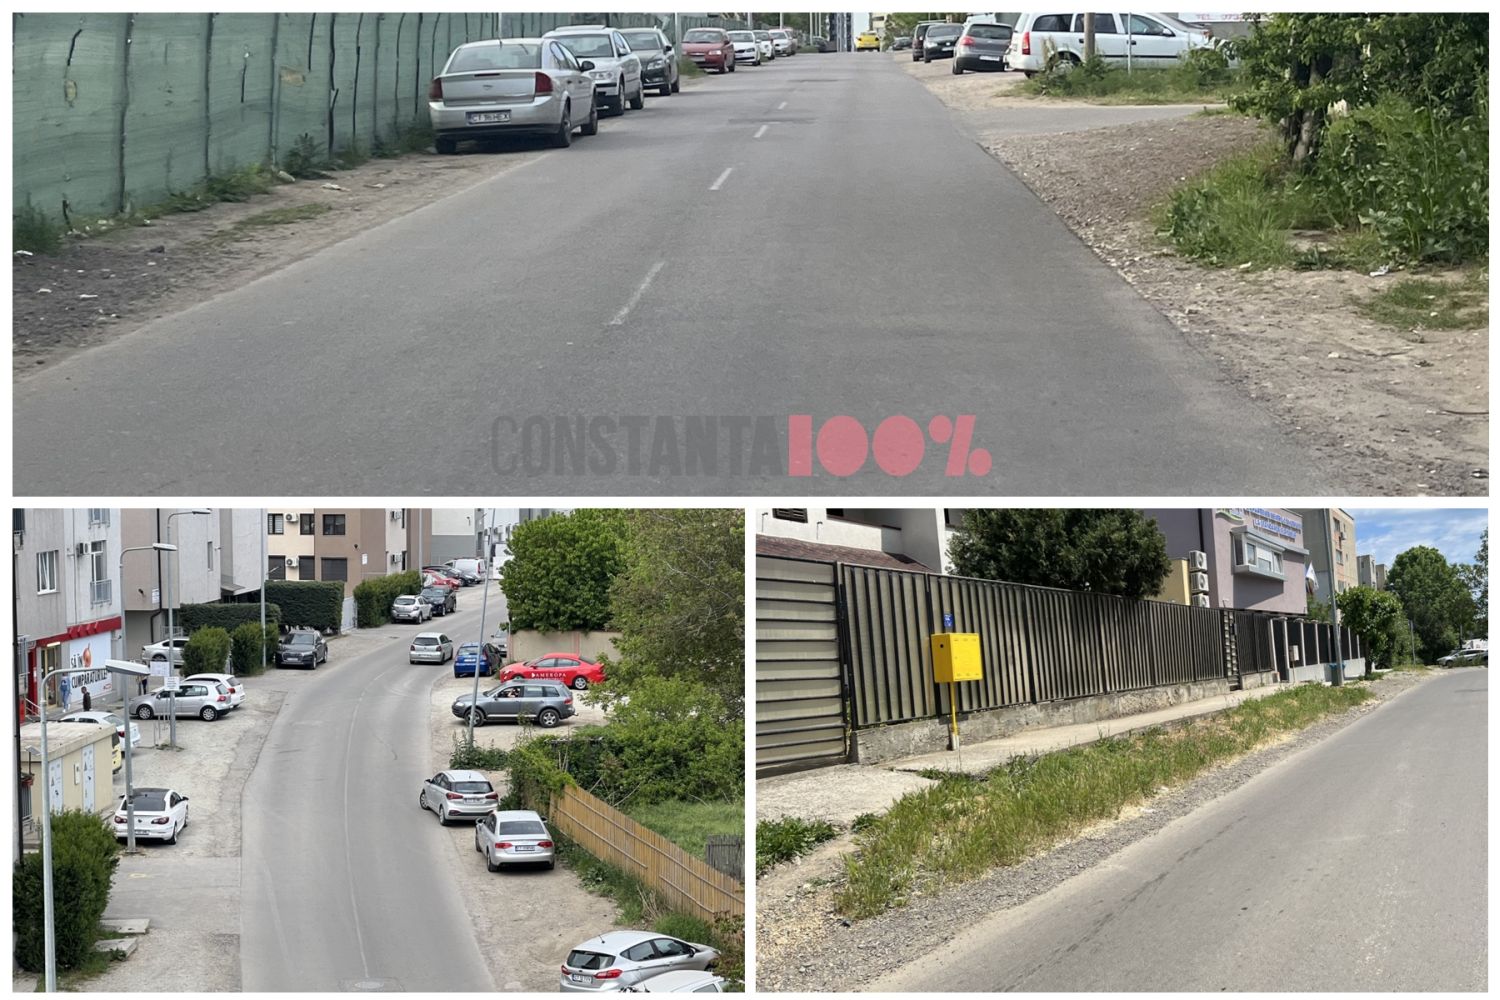 Primăria Constanța spune că oamenii vor circula pe trotuare pe strada care nu are trotuare